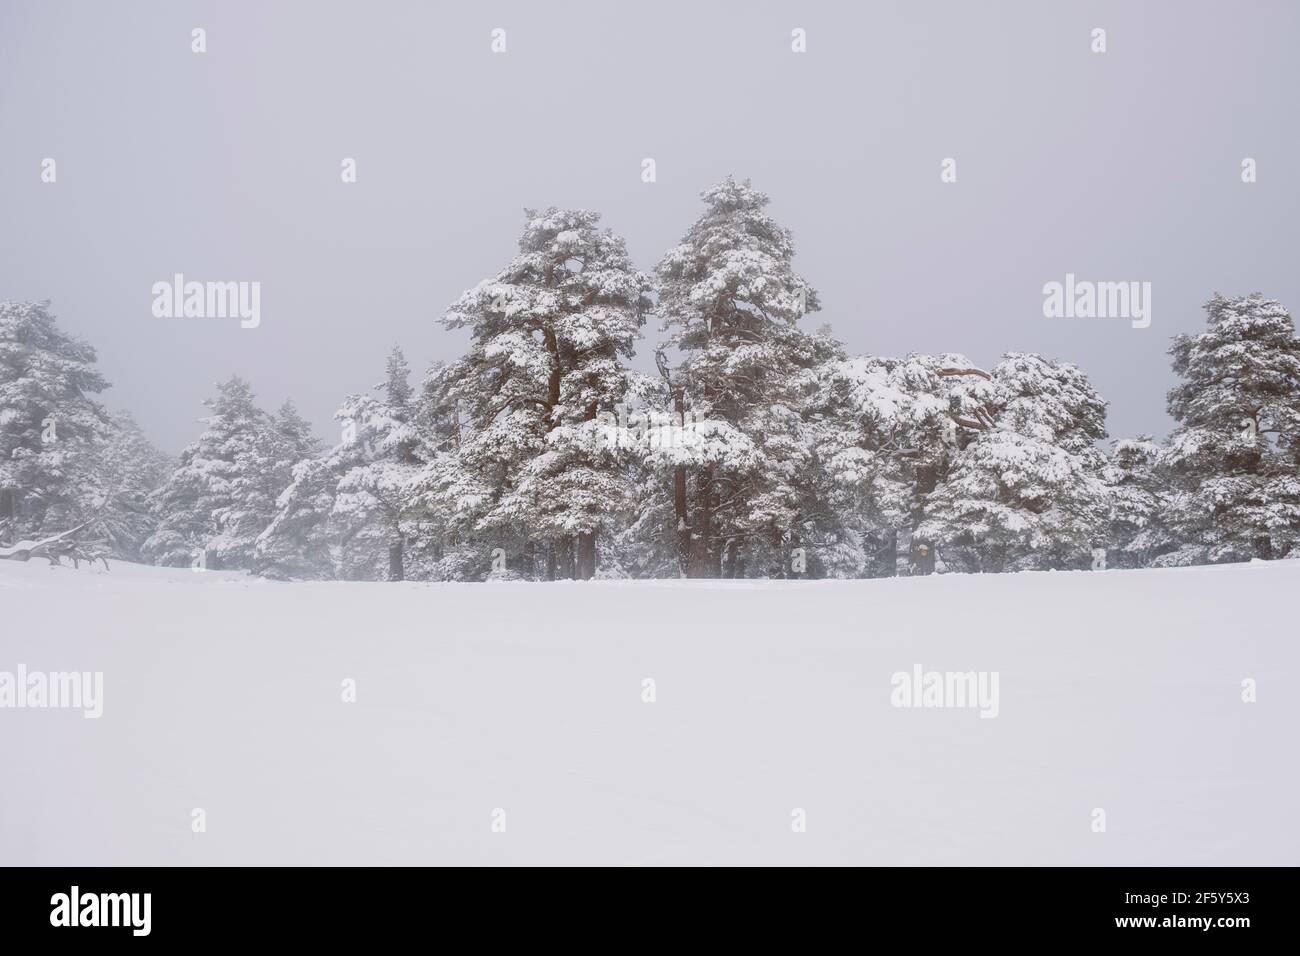 Winter snowcapped trees scenery in Sierra de Guadarrama, Madrid, Spain Stock Photo